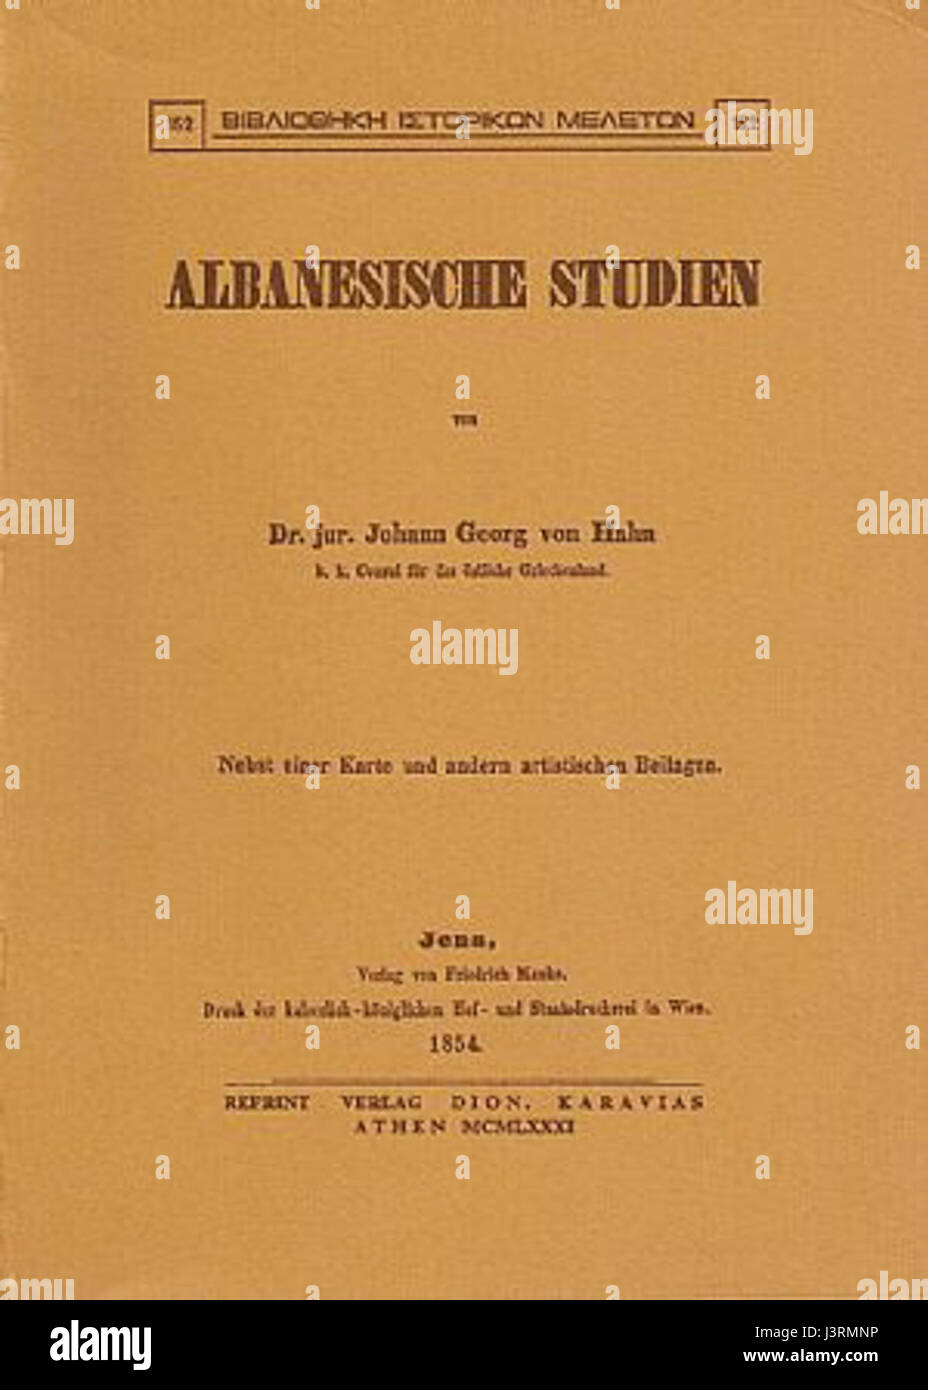 Johan von Hahn Albanesische Studen Jena 1854 Foto Stock